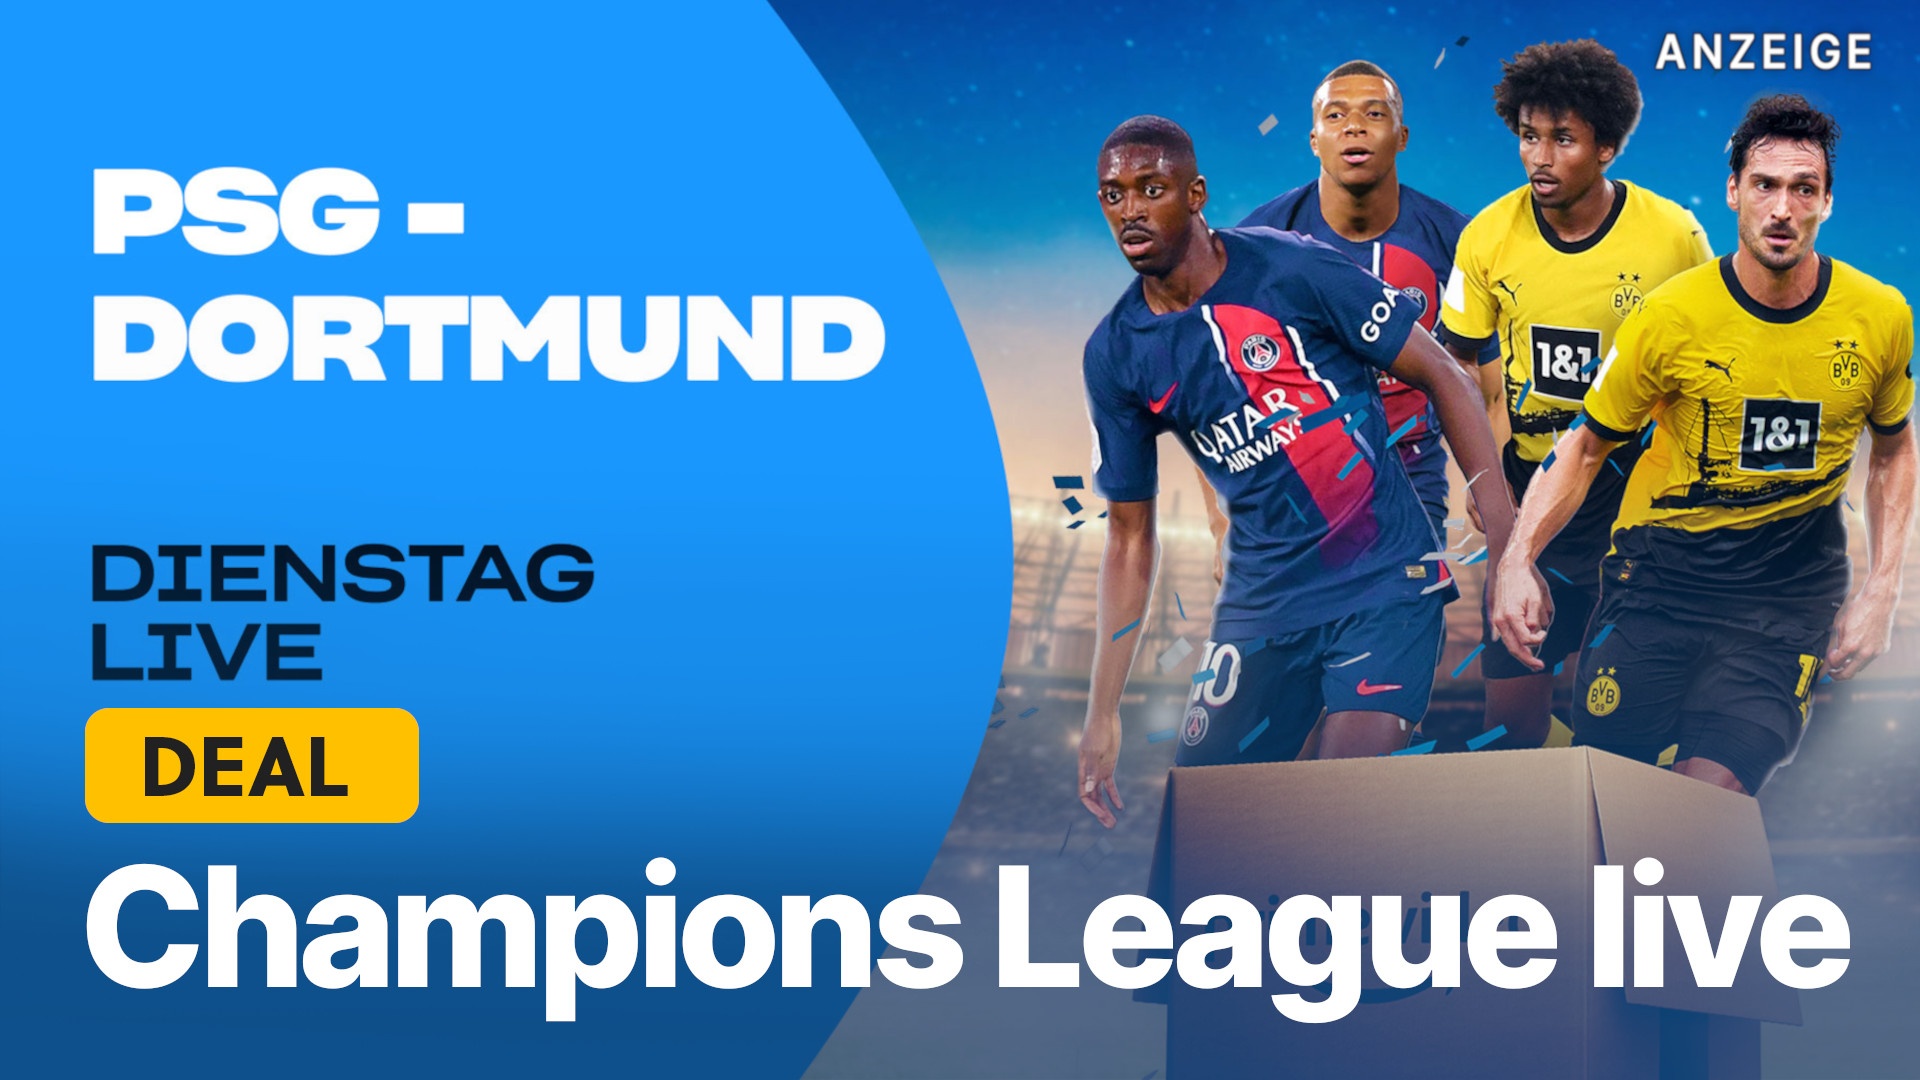 Champions League live PSG gegen Dortmund nur mit Amazon Prime kostenlos streamen